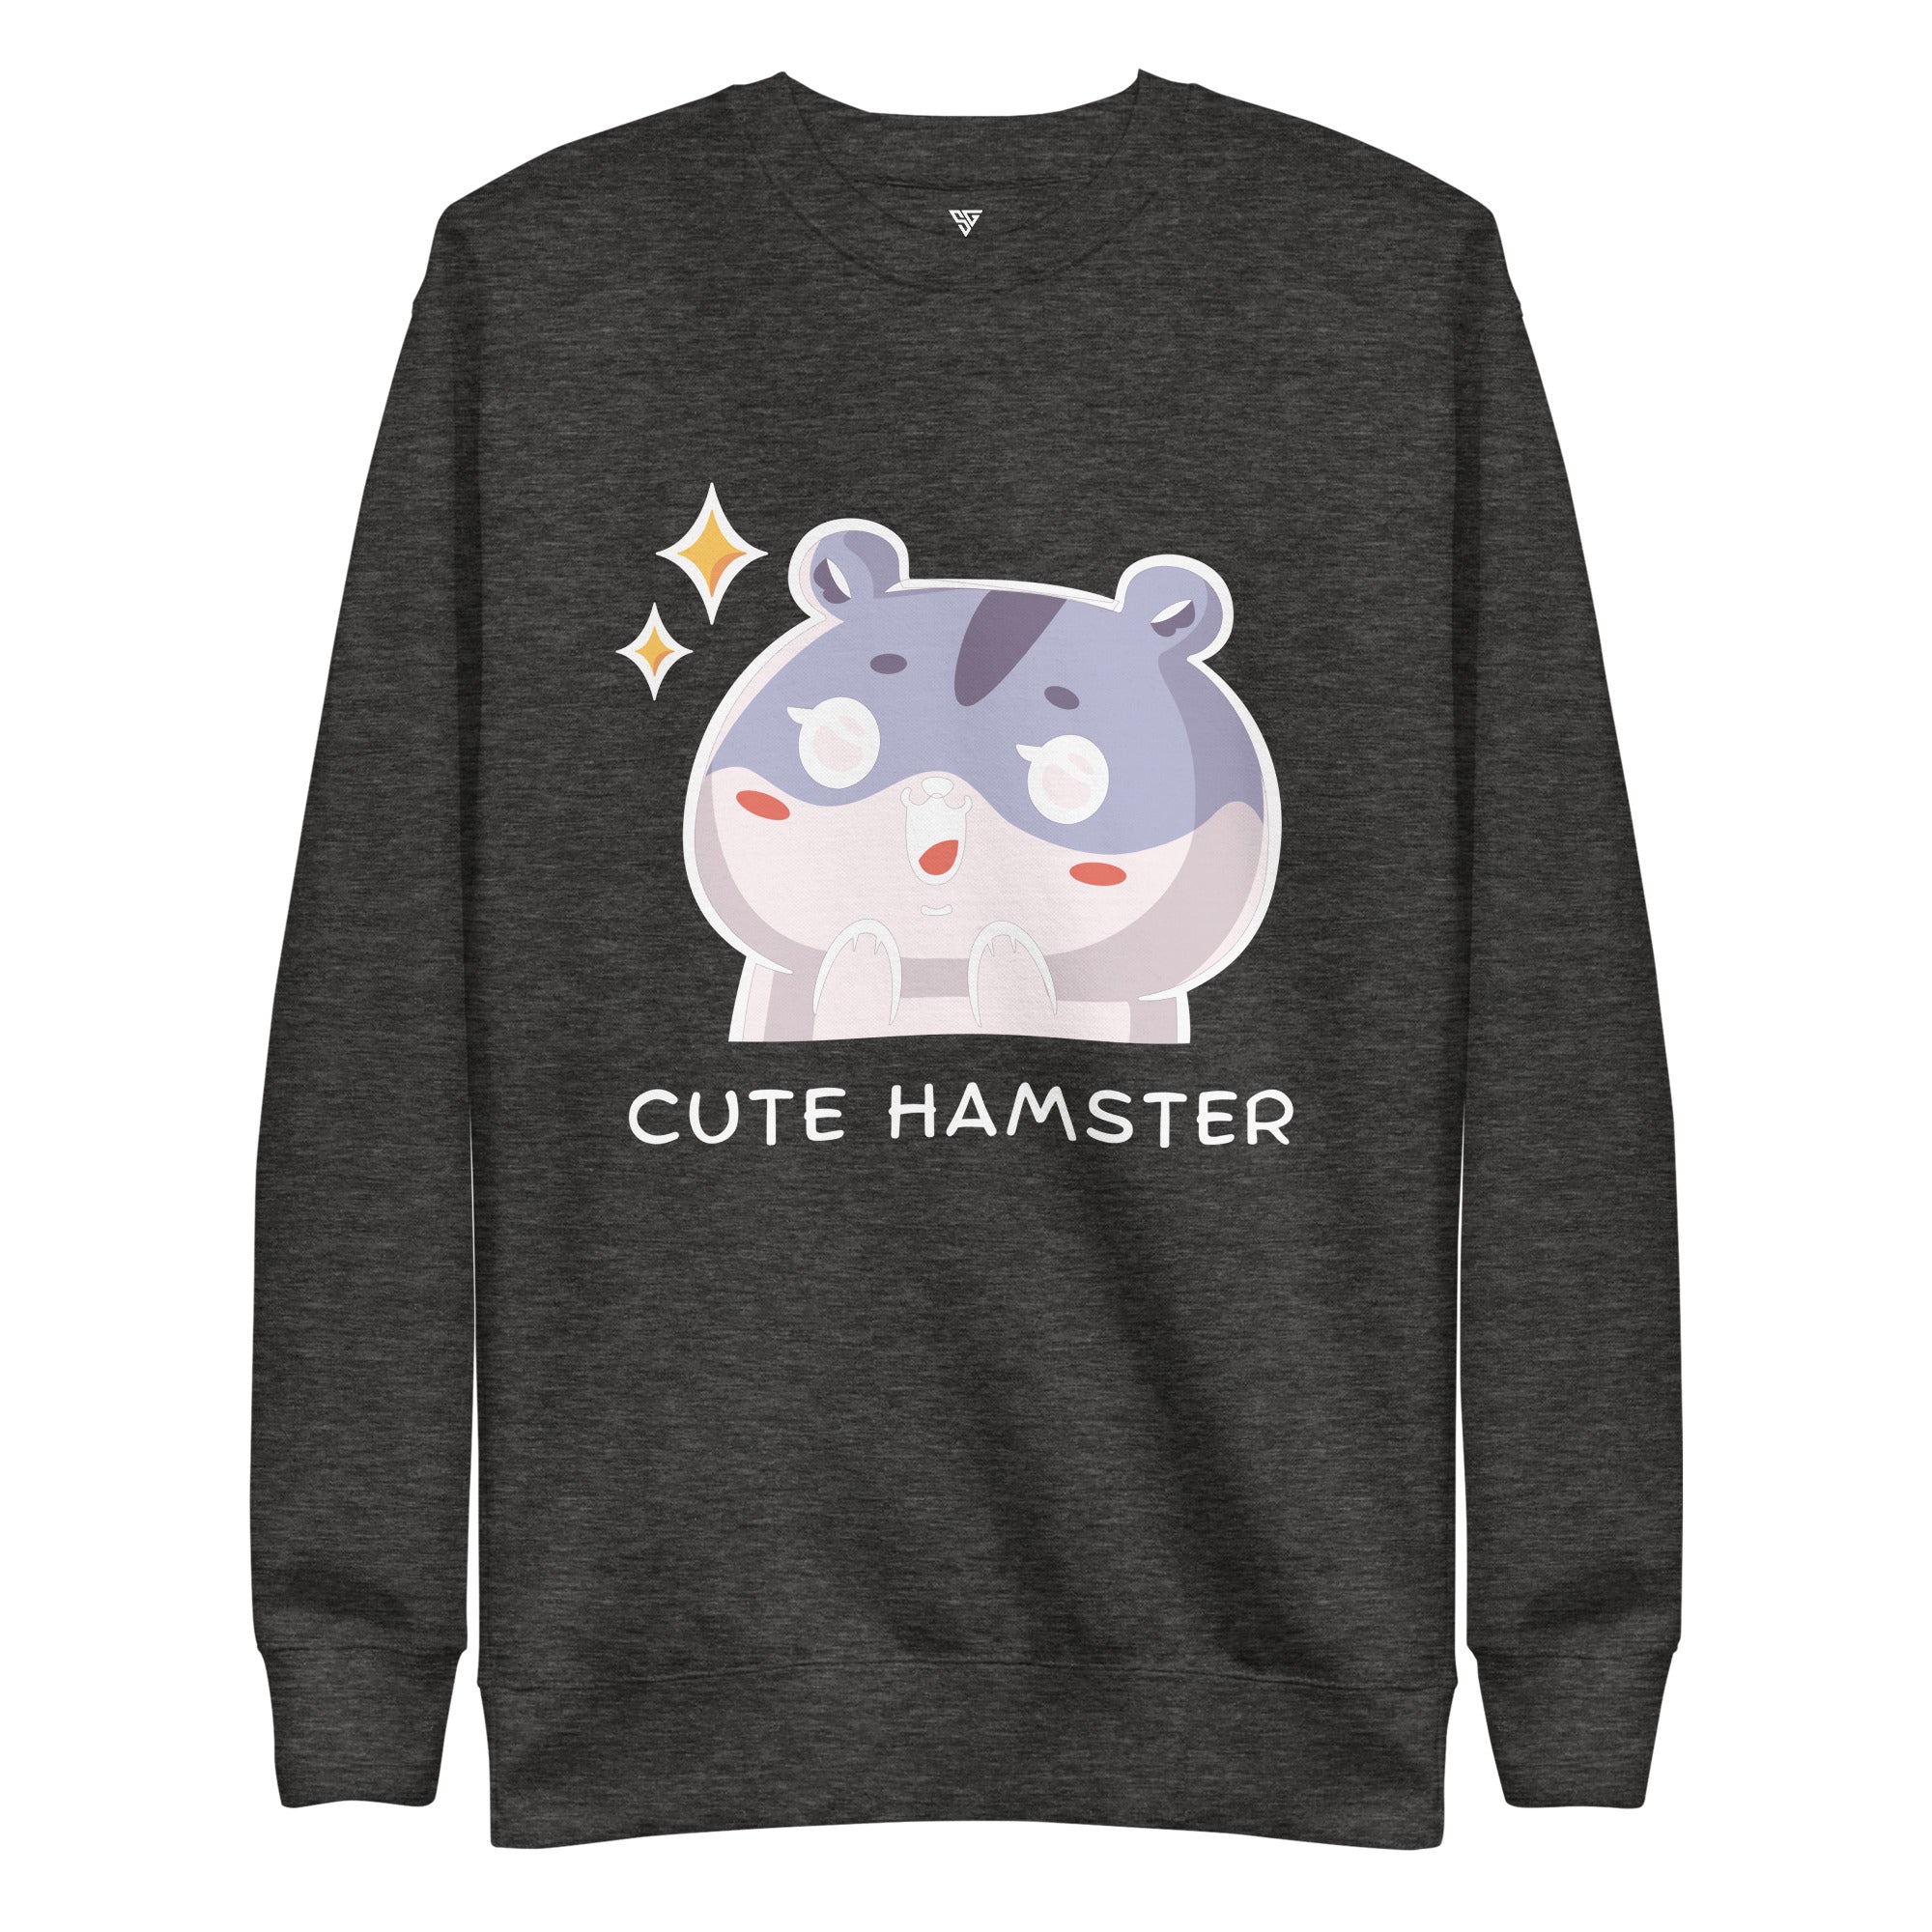 SORTYGO - Cute Hamster Women Premium Sweatshirt in Charcoal Heather